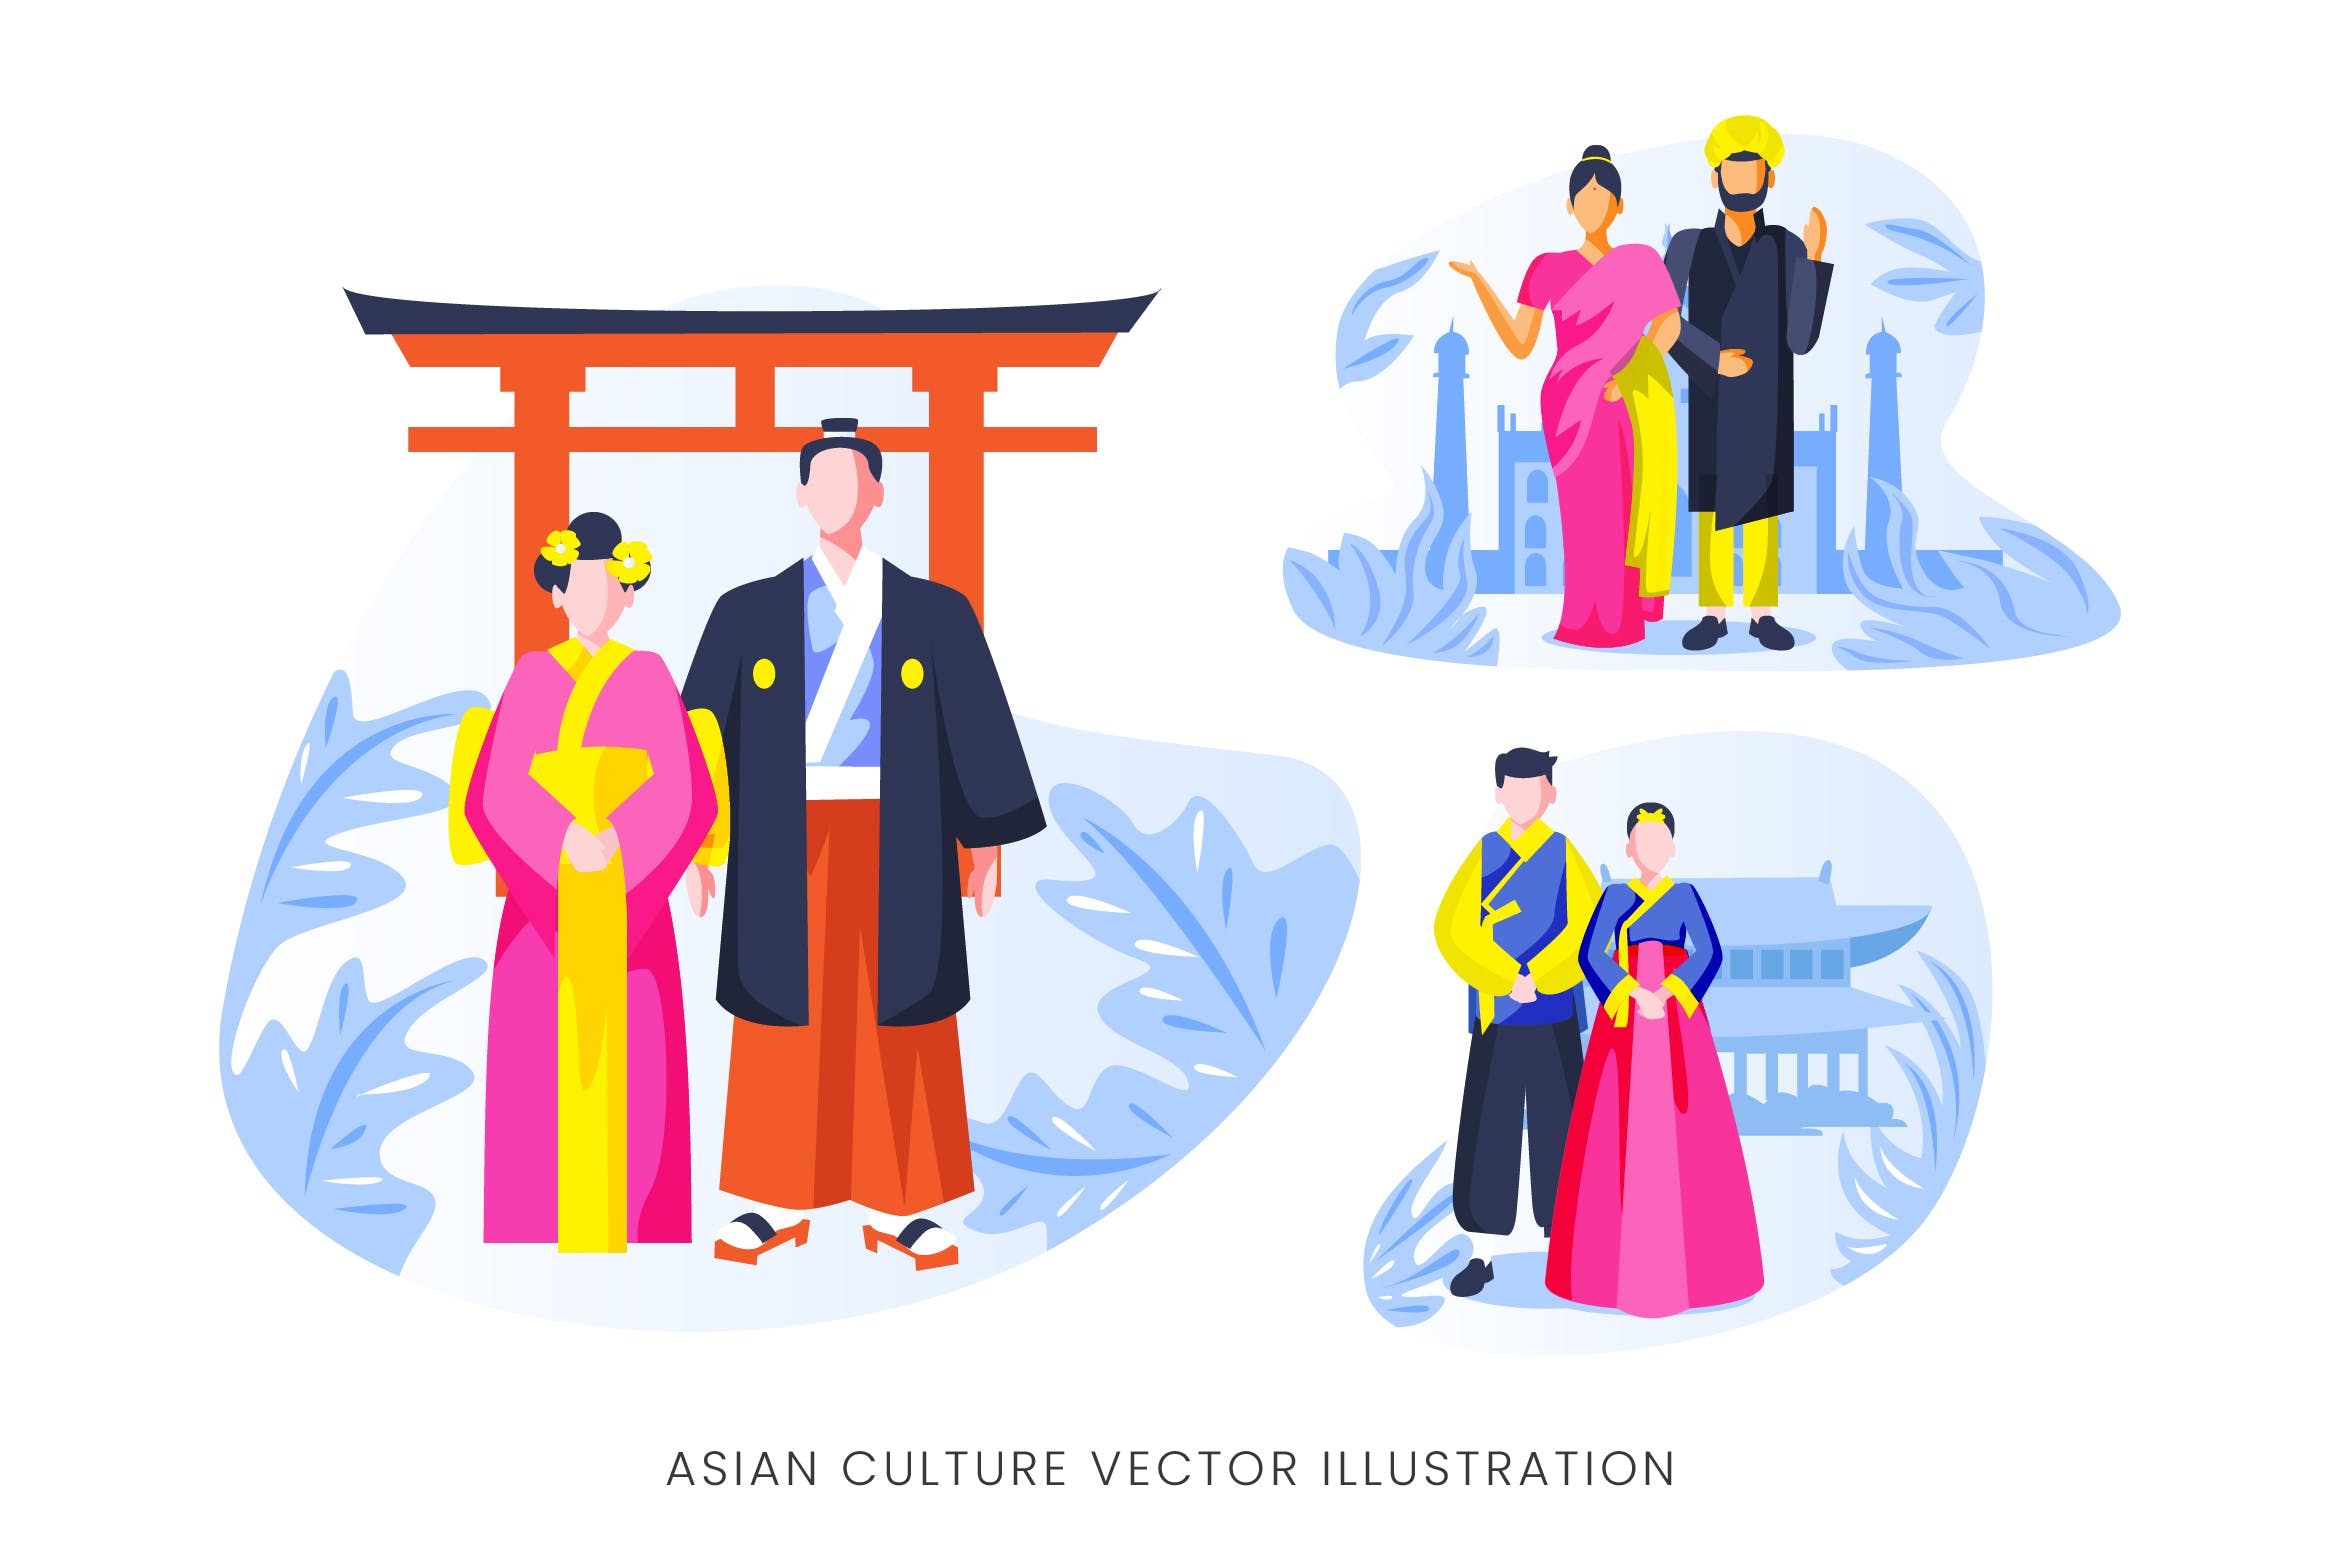 亚洲文化人物形象非凡图库精选手绘插画矢量素材 Asian Culture Vector Character Set插图